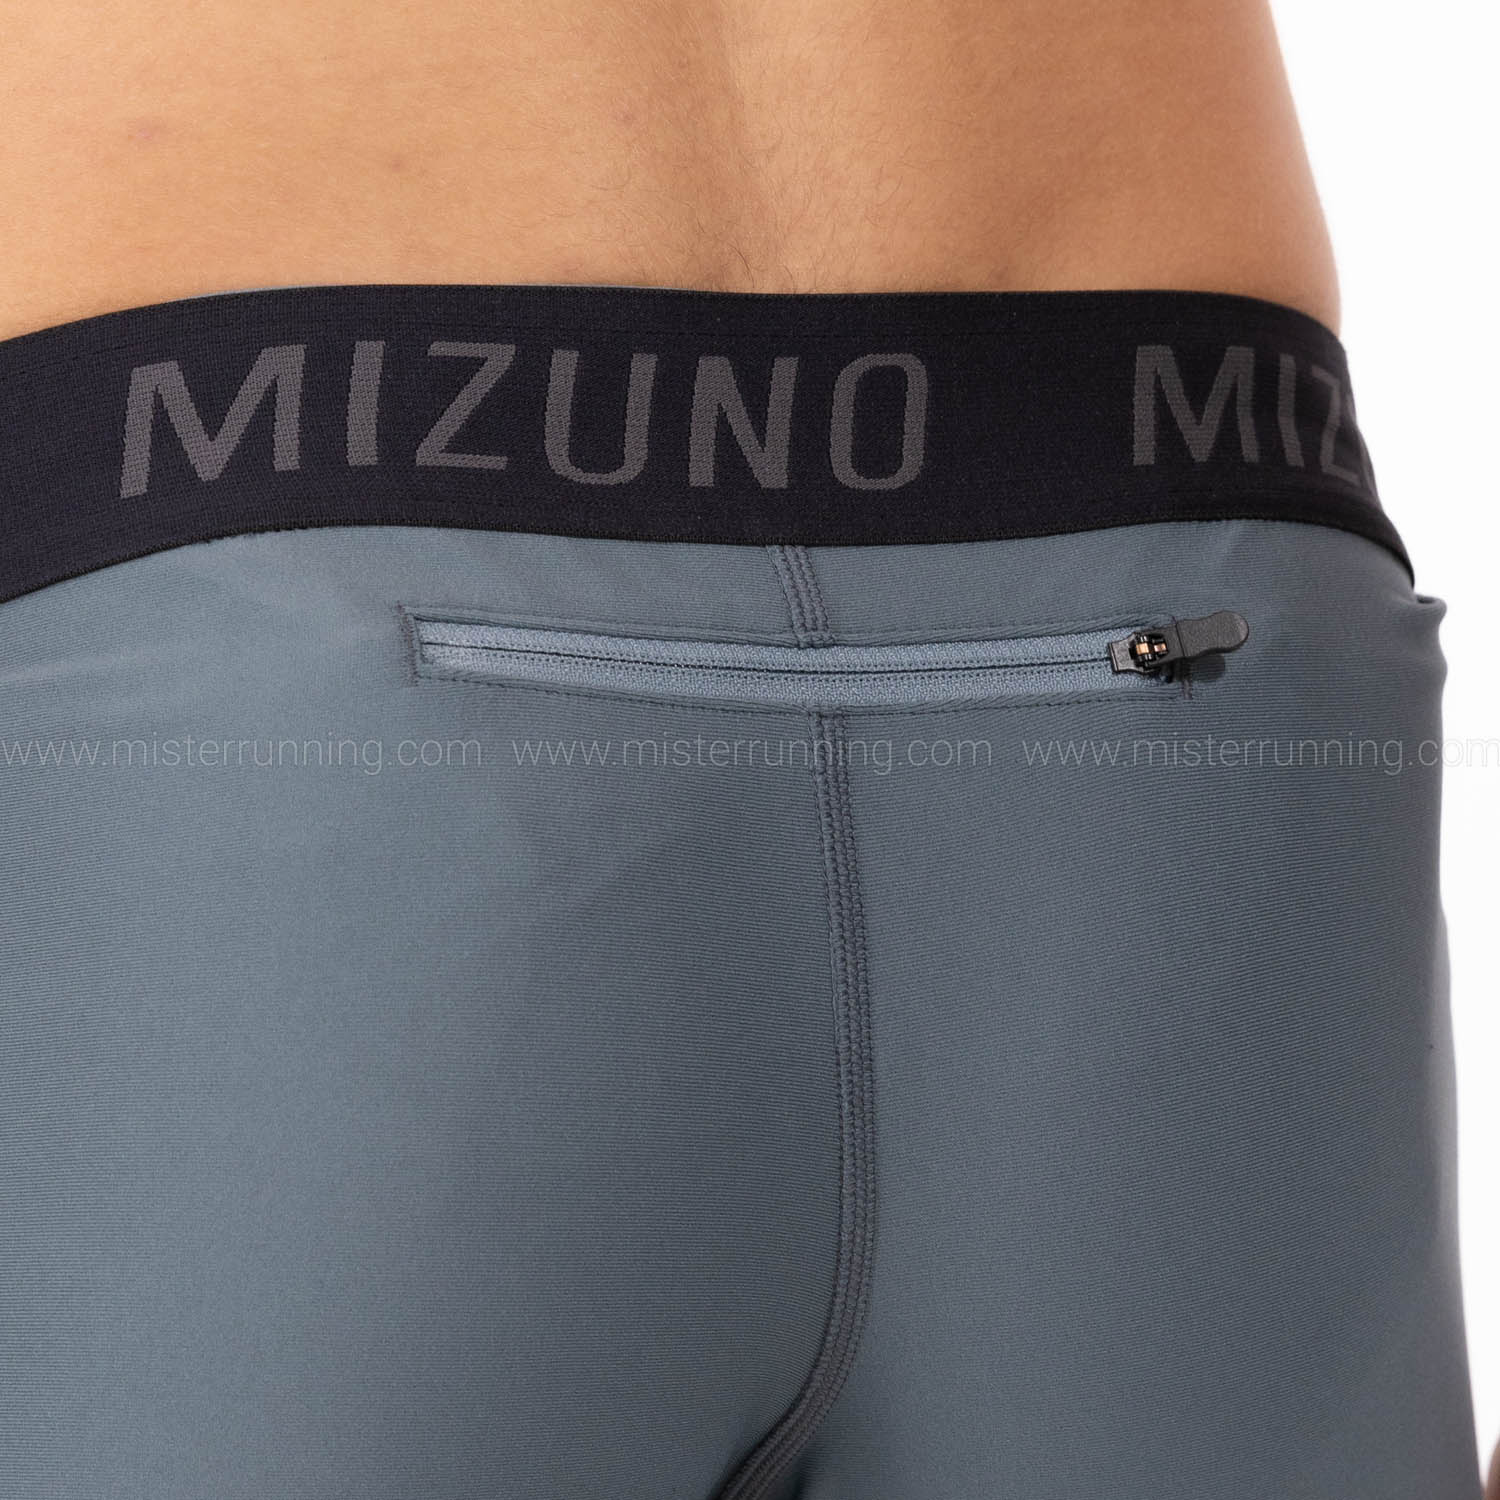 Mizuno Premium Blindstitch Tights - Stormy Weather